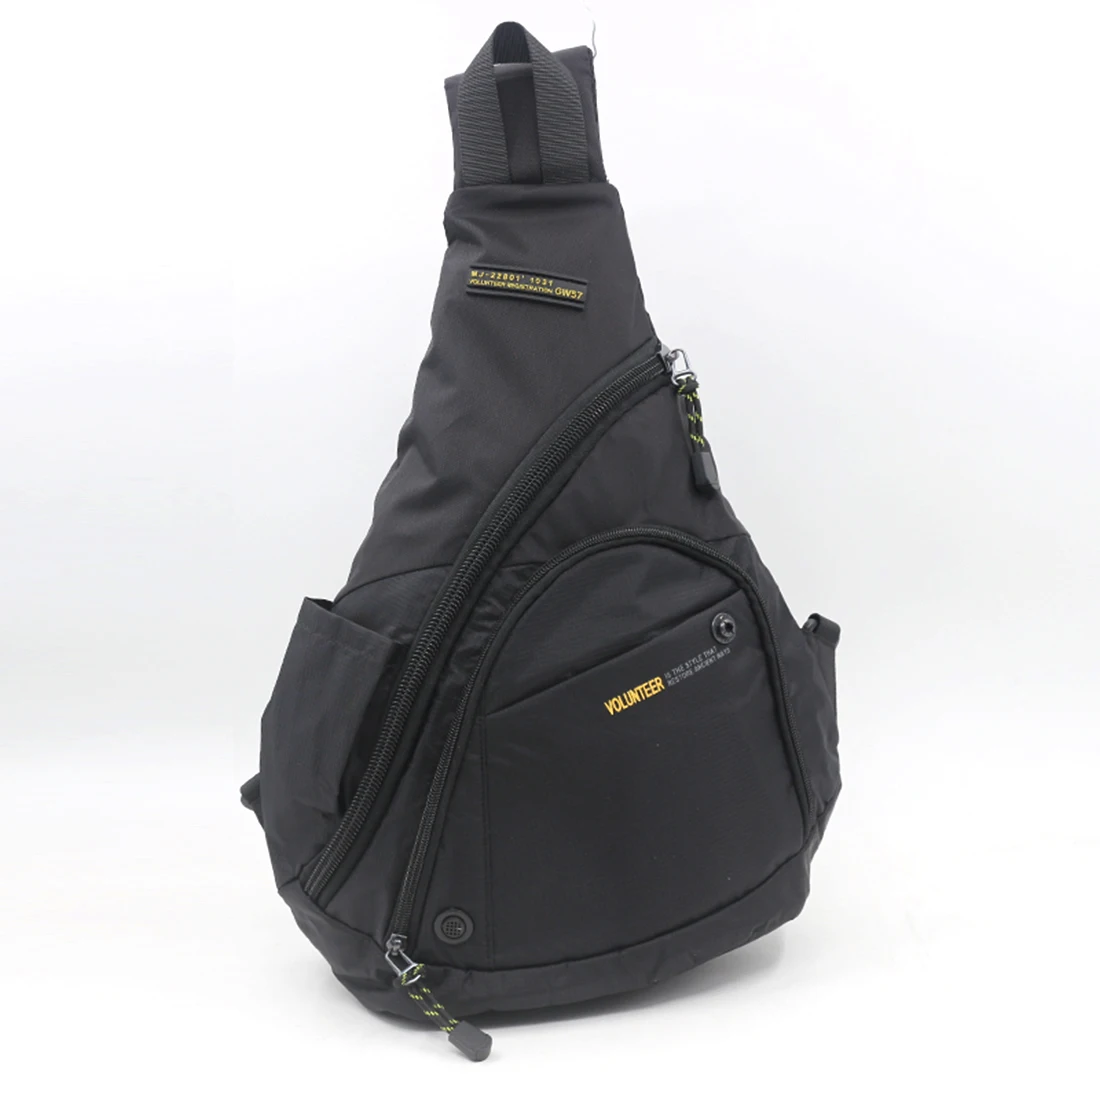 Высокое качество, один рюкзак, рюкзак для путешествий, модный рюкзак для бутылки воды/чайника, сумка через плечо, нагрудные сумки, новинка - Цвет: Black